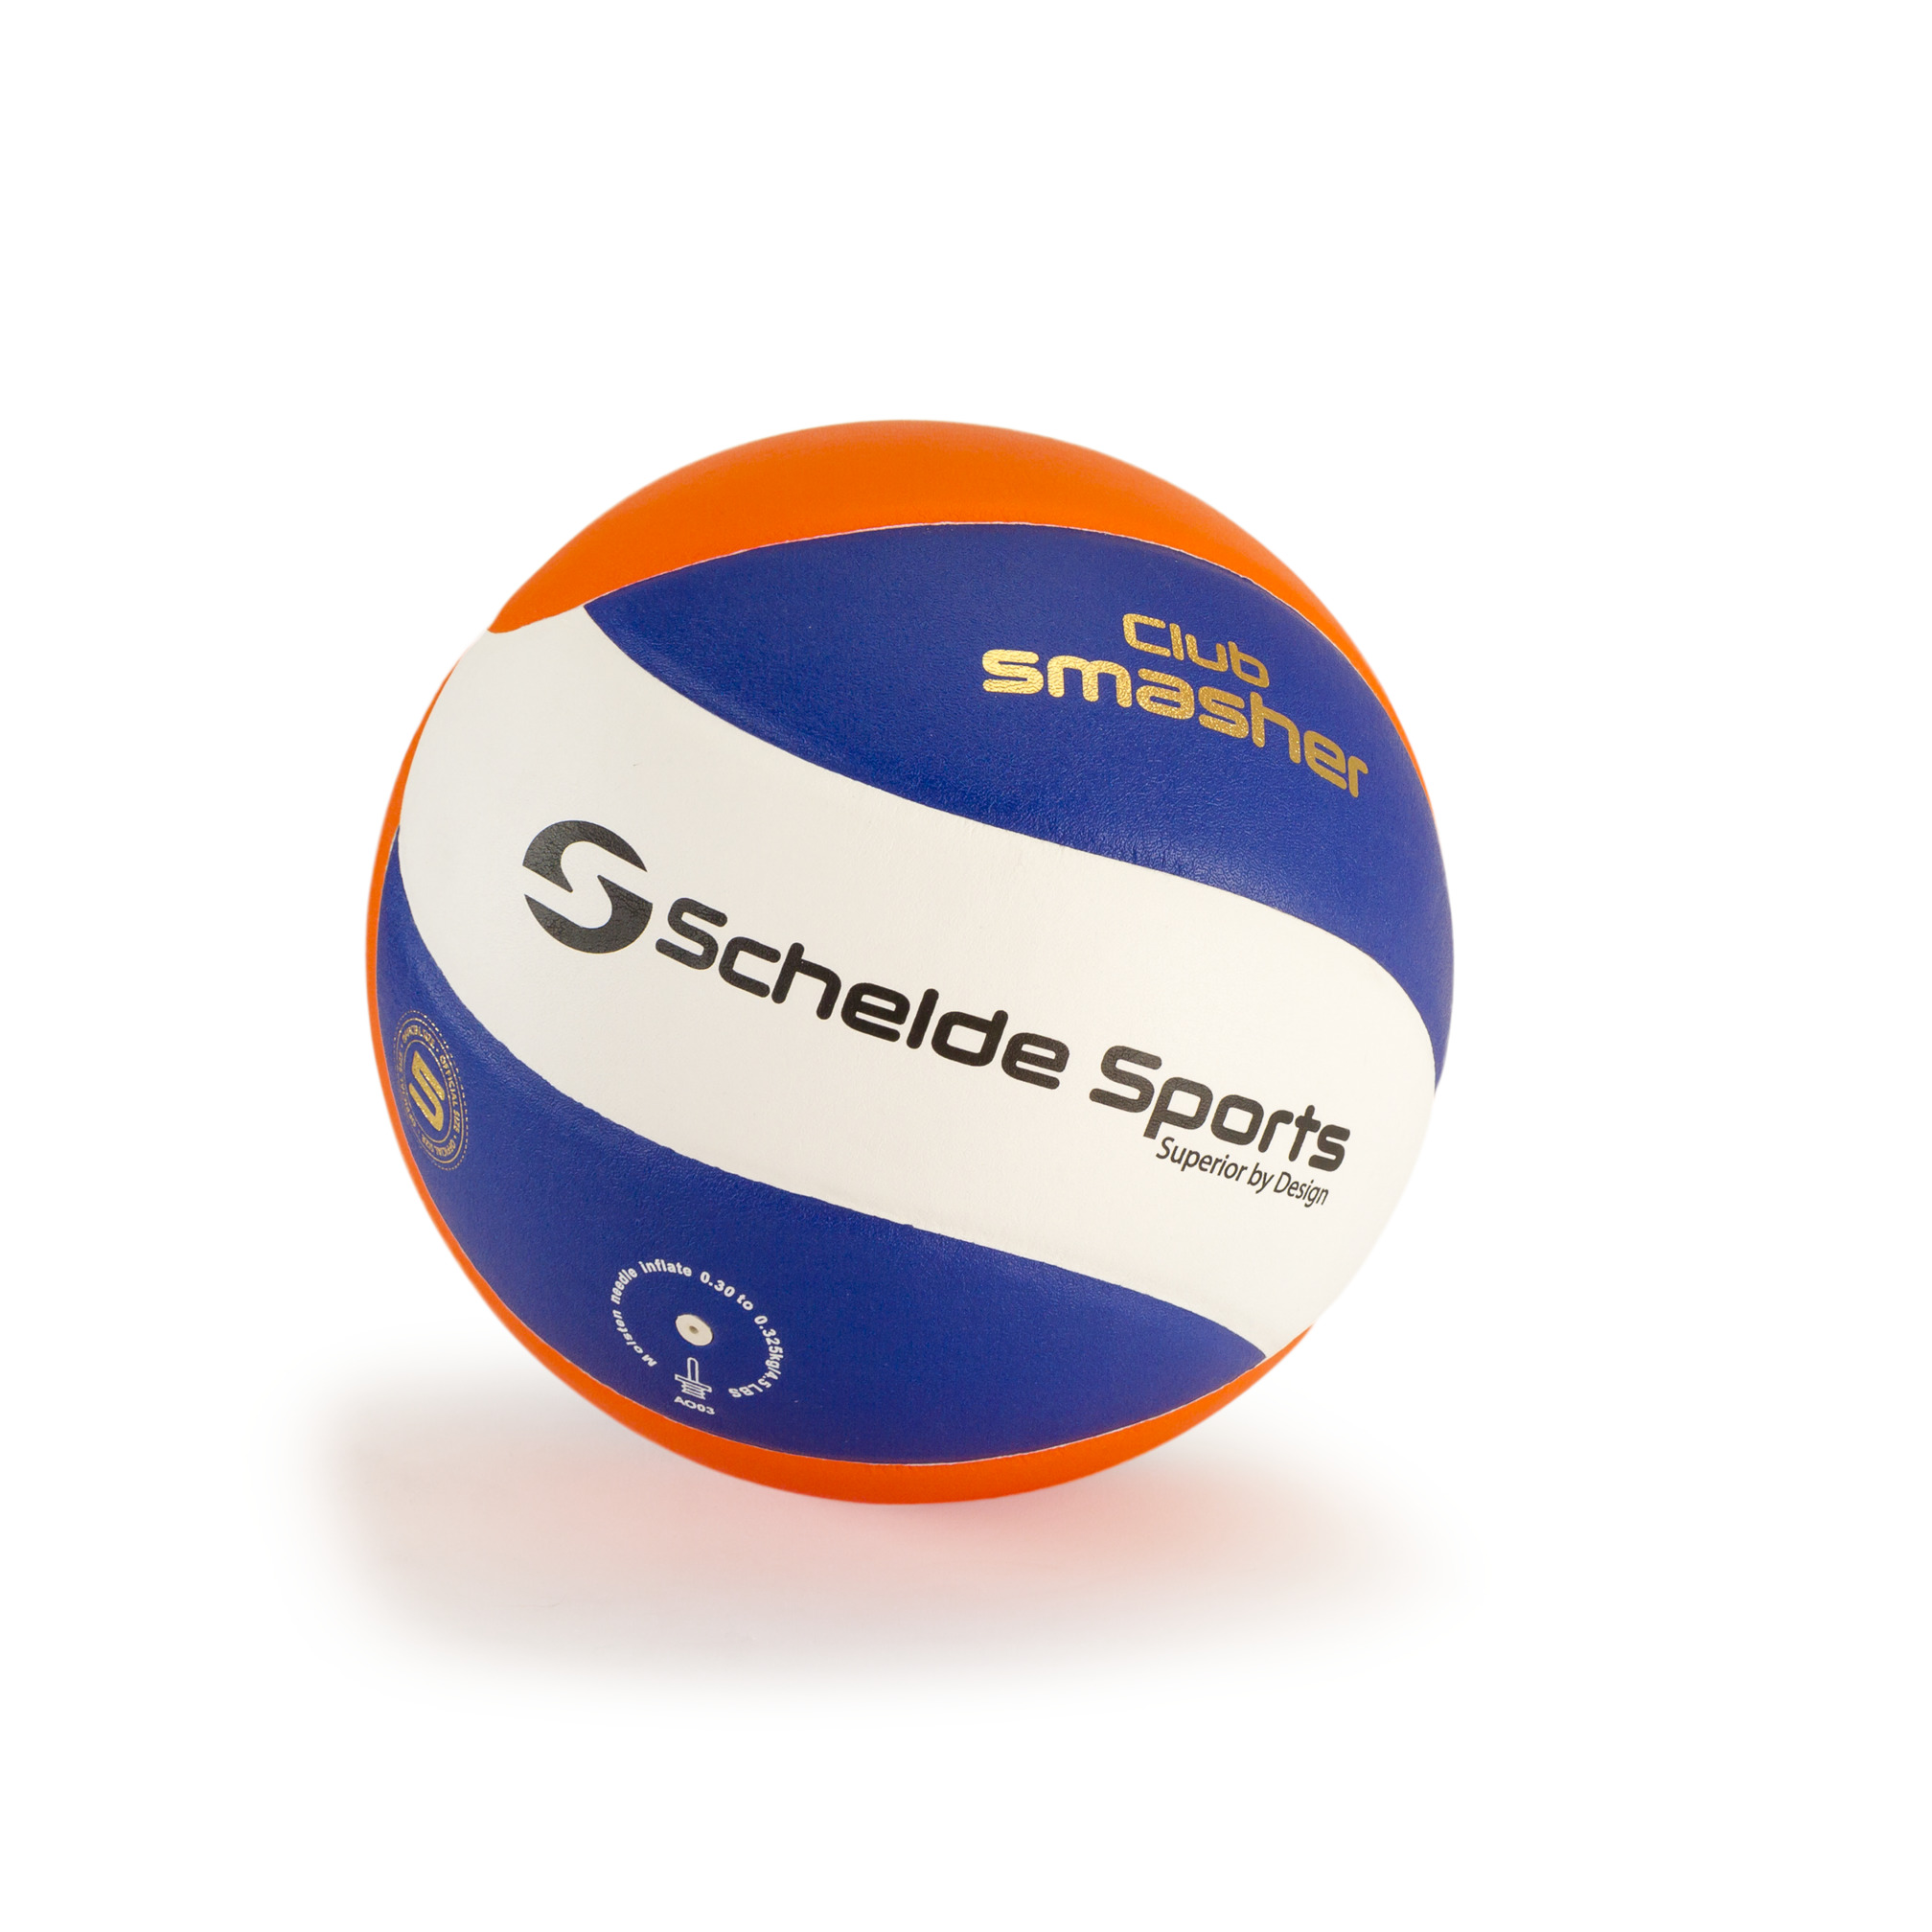 Schelde Sports Volleyball Club Smasher, size 5